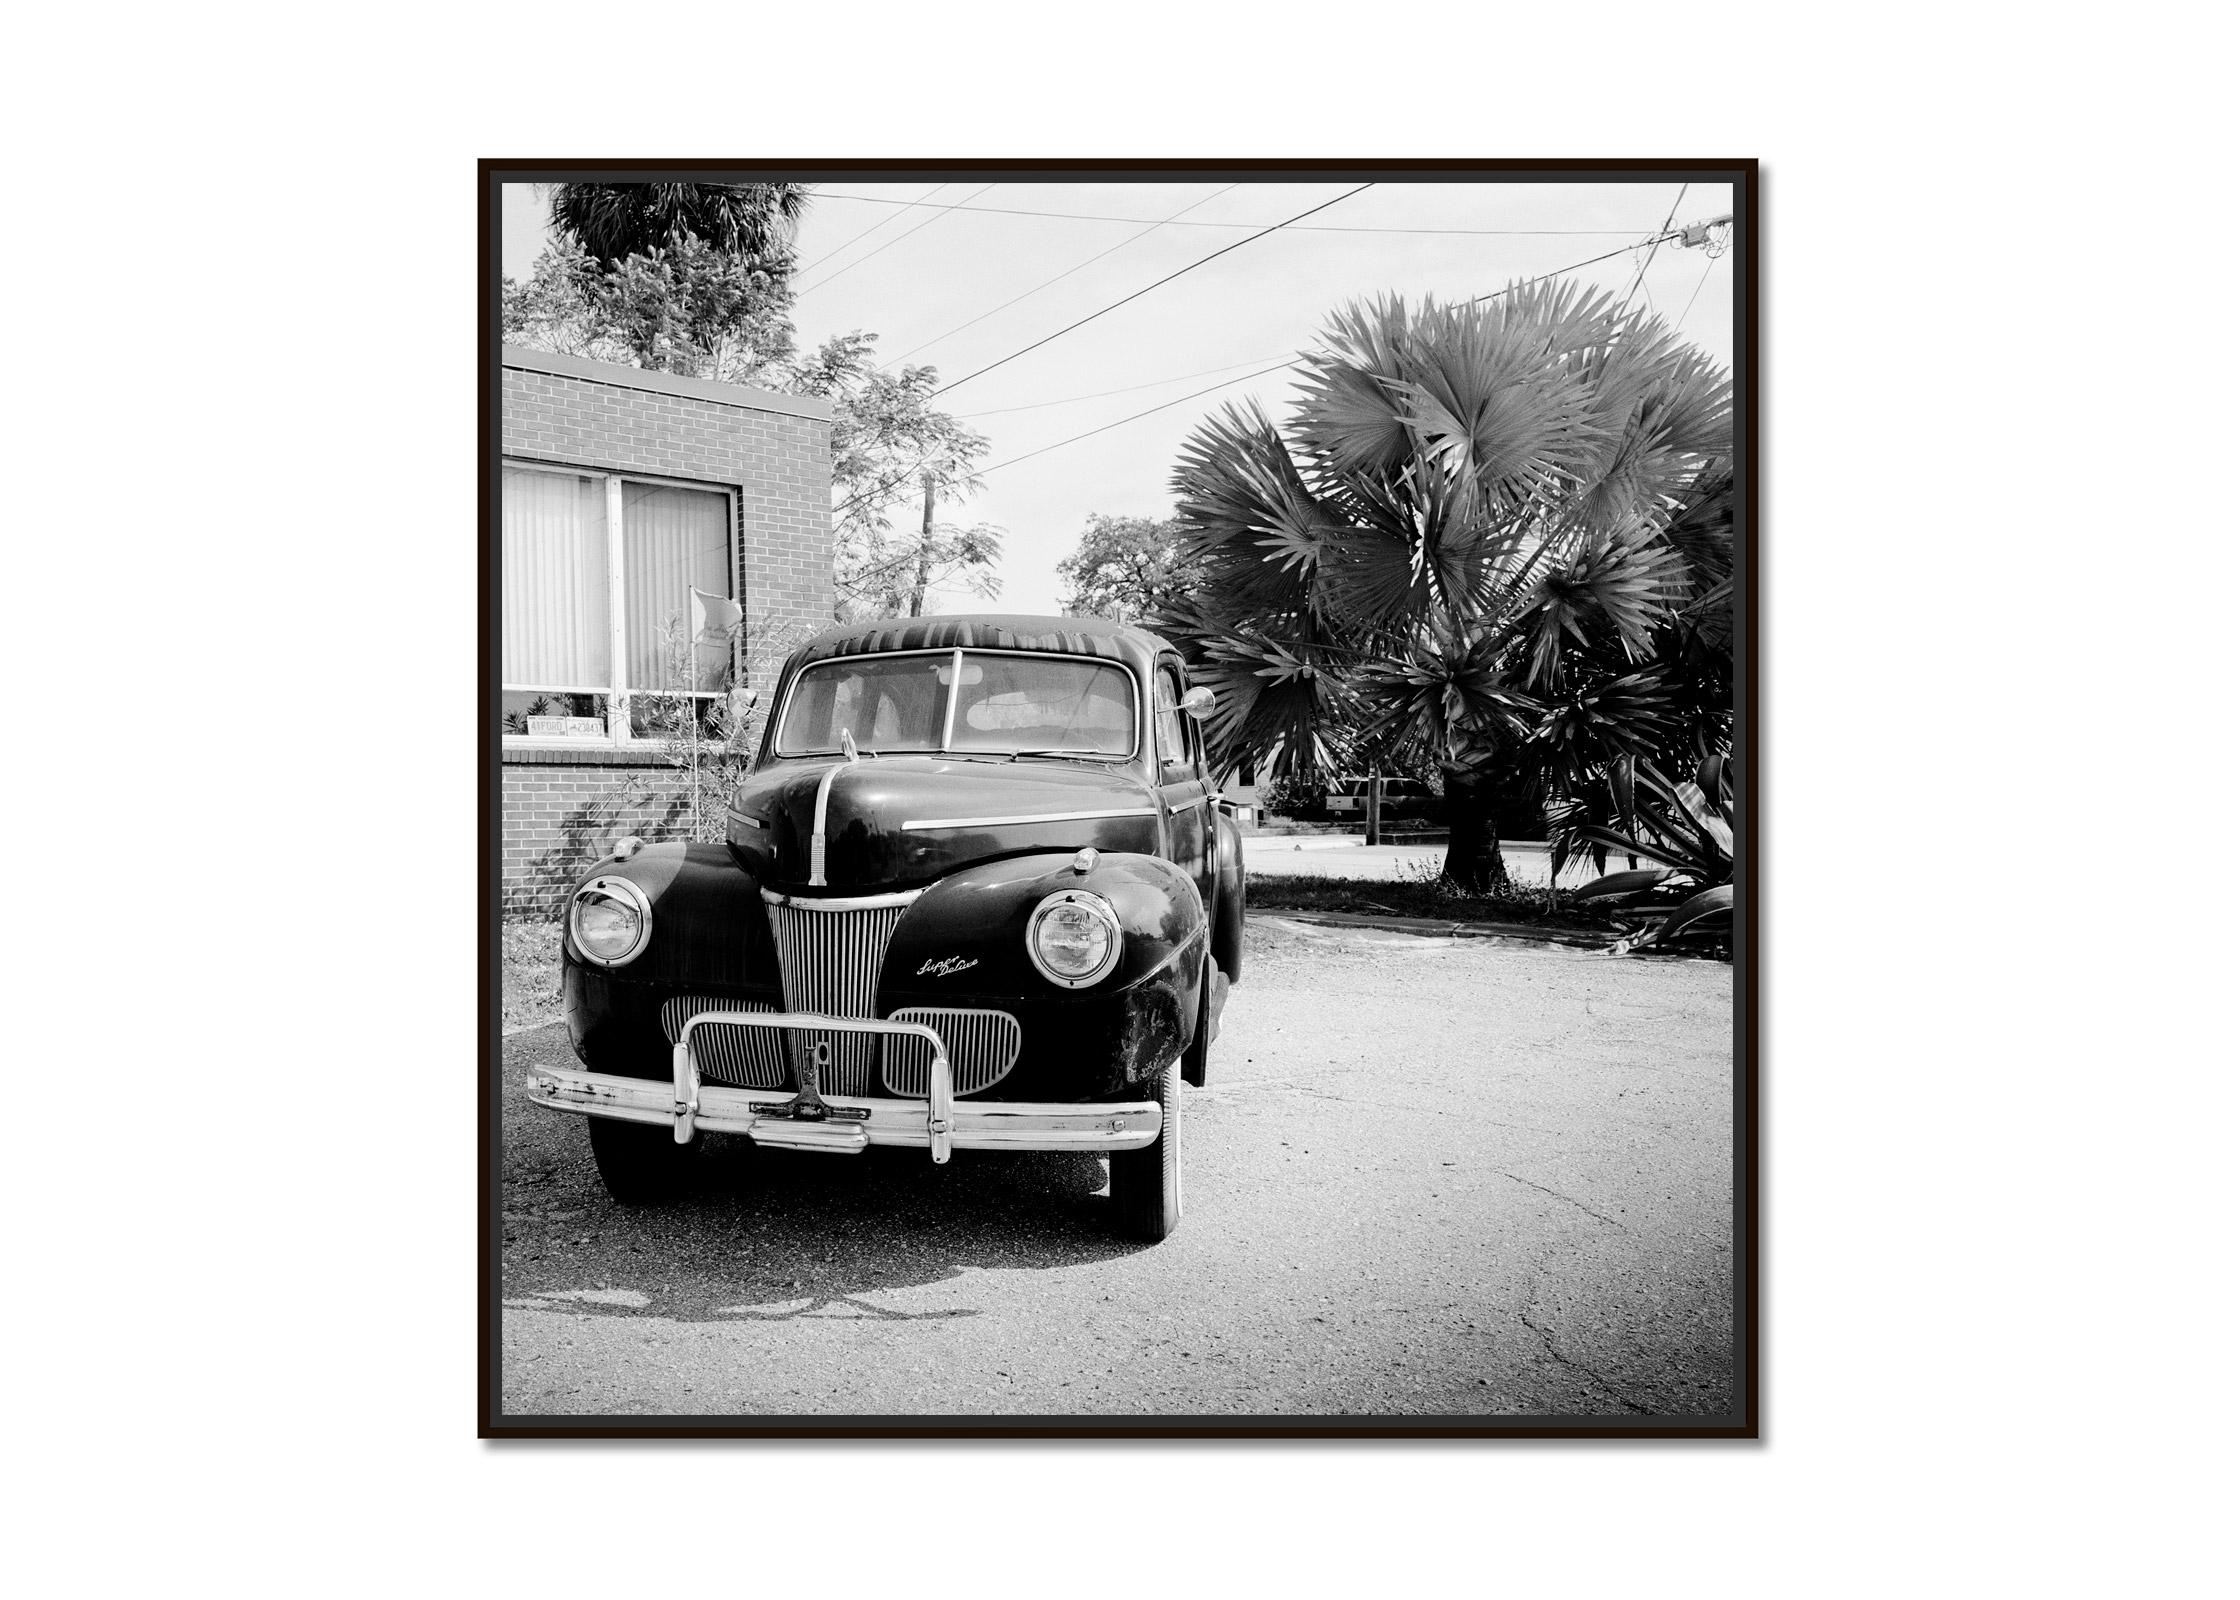 1941 Ford Super Deluxe Business Coupe, USA, schwarz-weiße Fotografie, Landschaft – Photograph von Gerald Berghammer